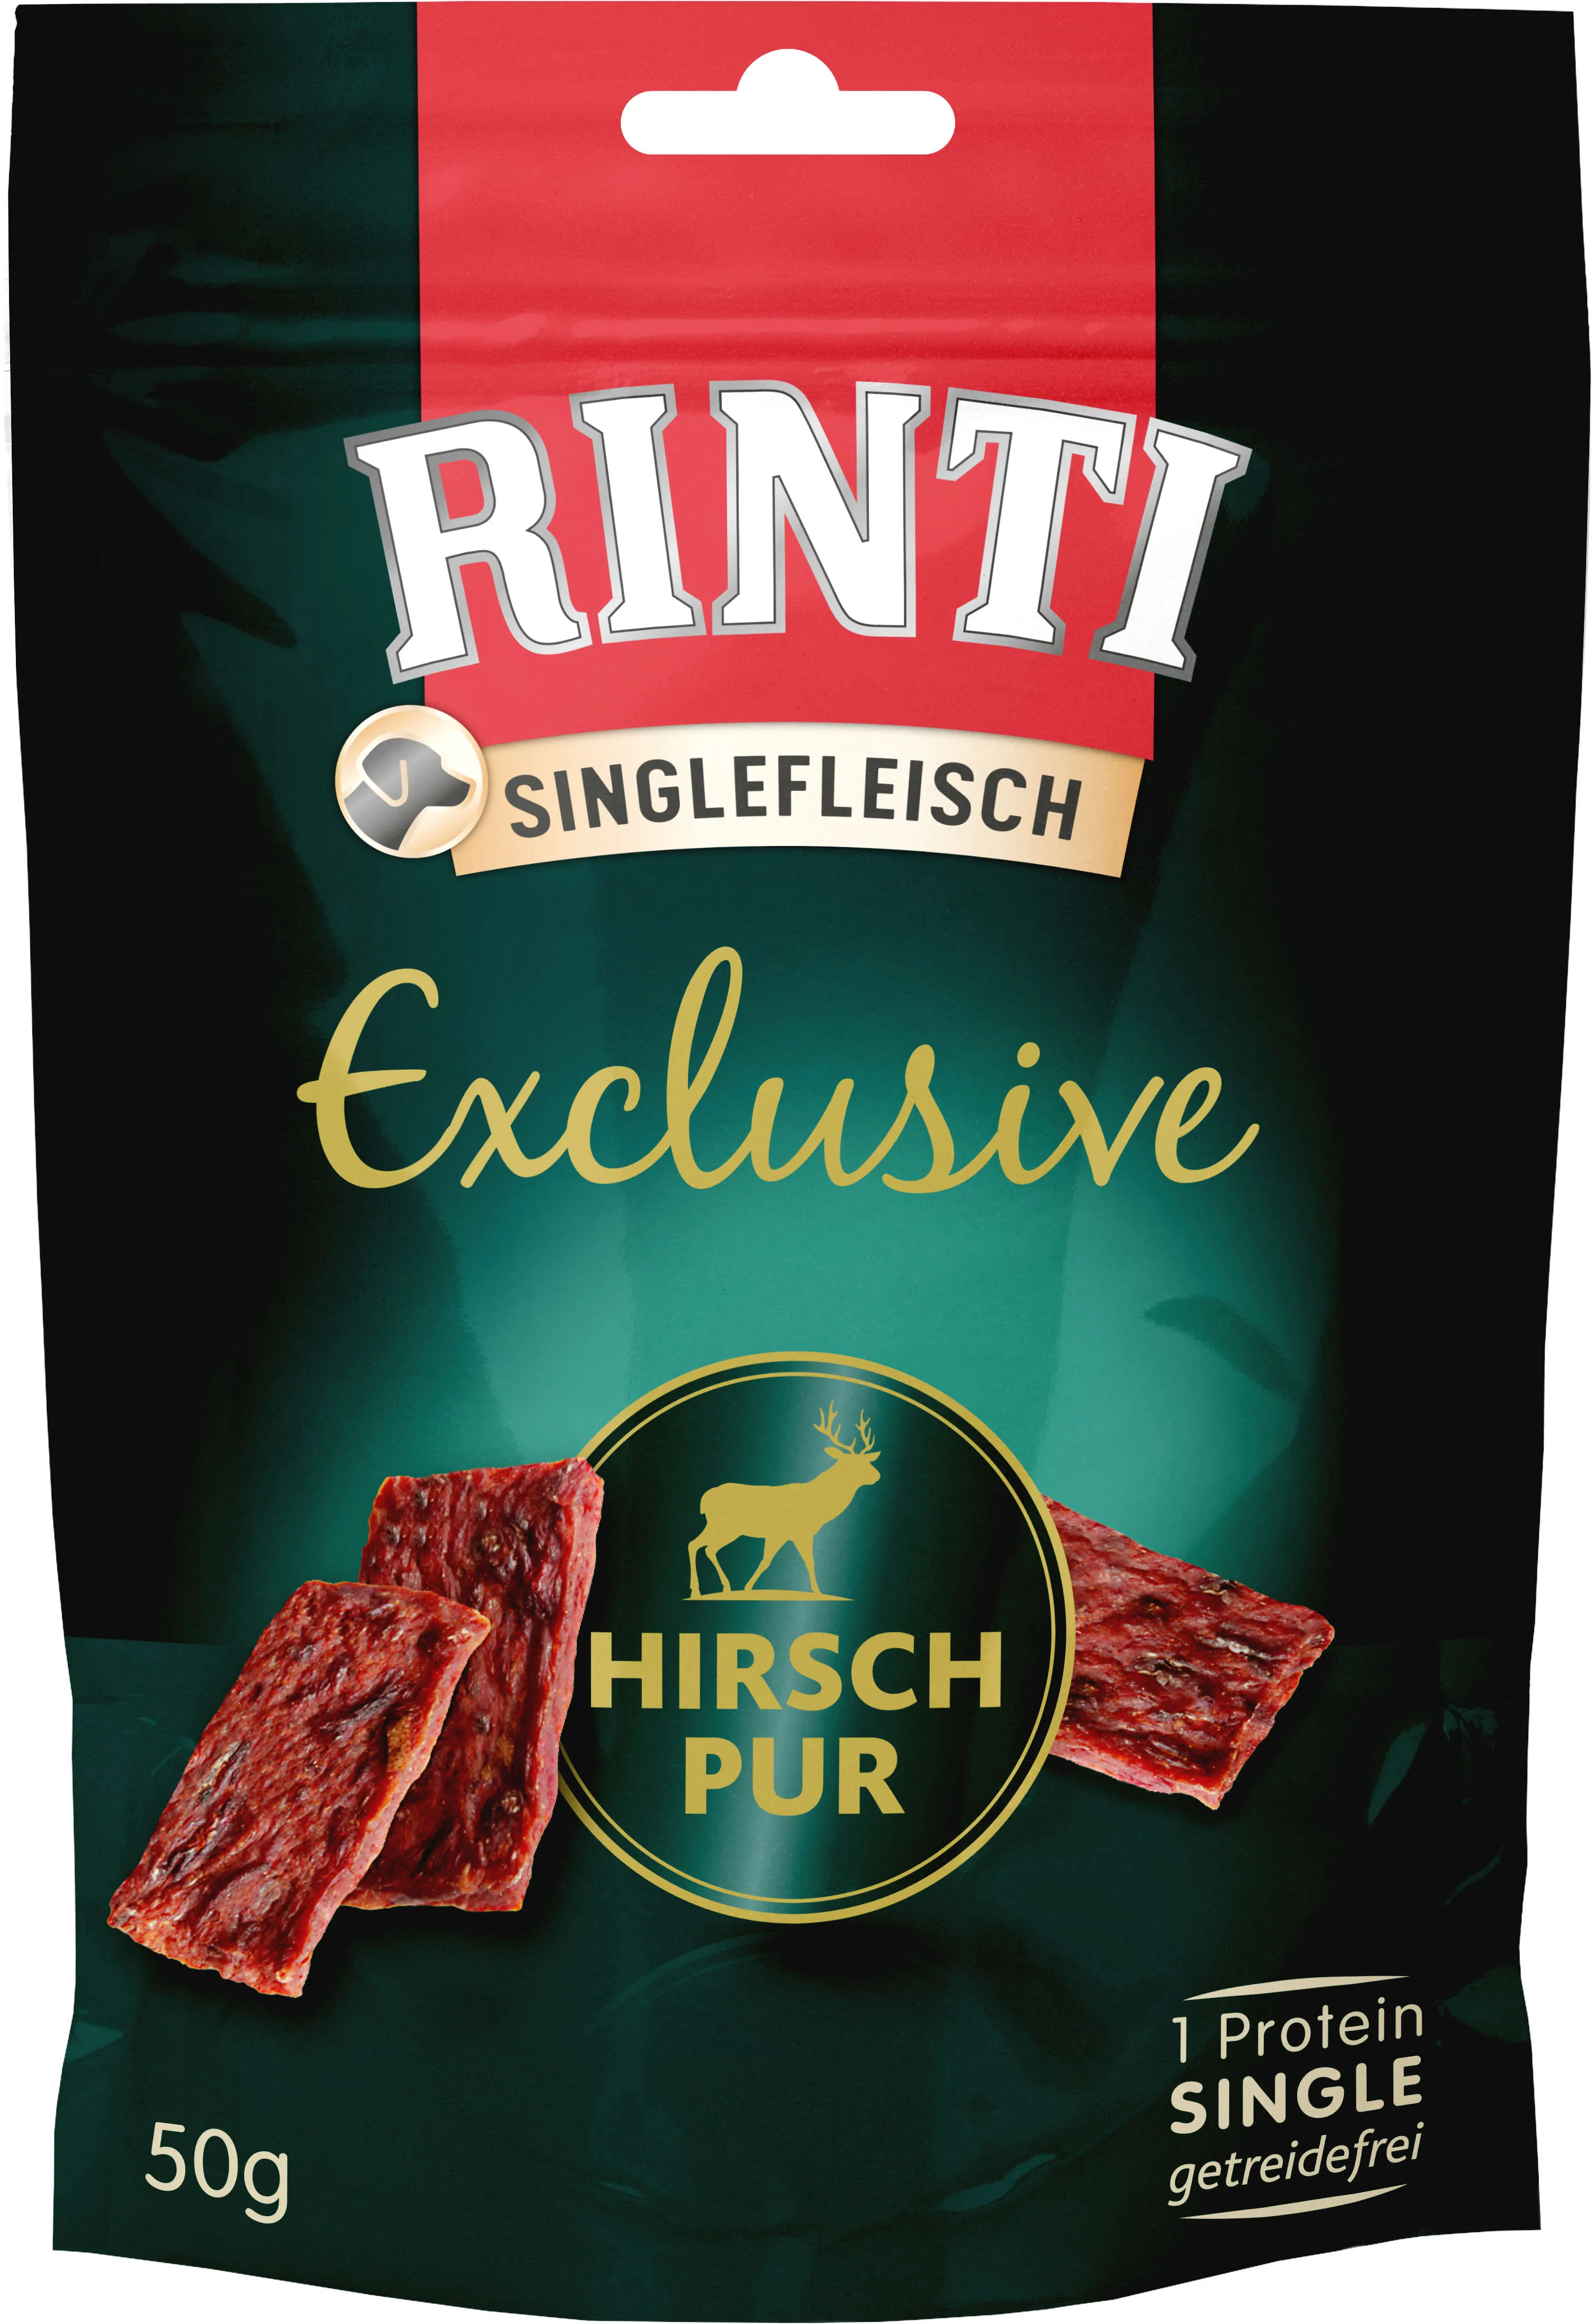 RINTI Hundeleckerlis Singlefleisch Exclusive Hirsch Pur